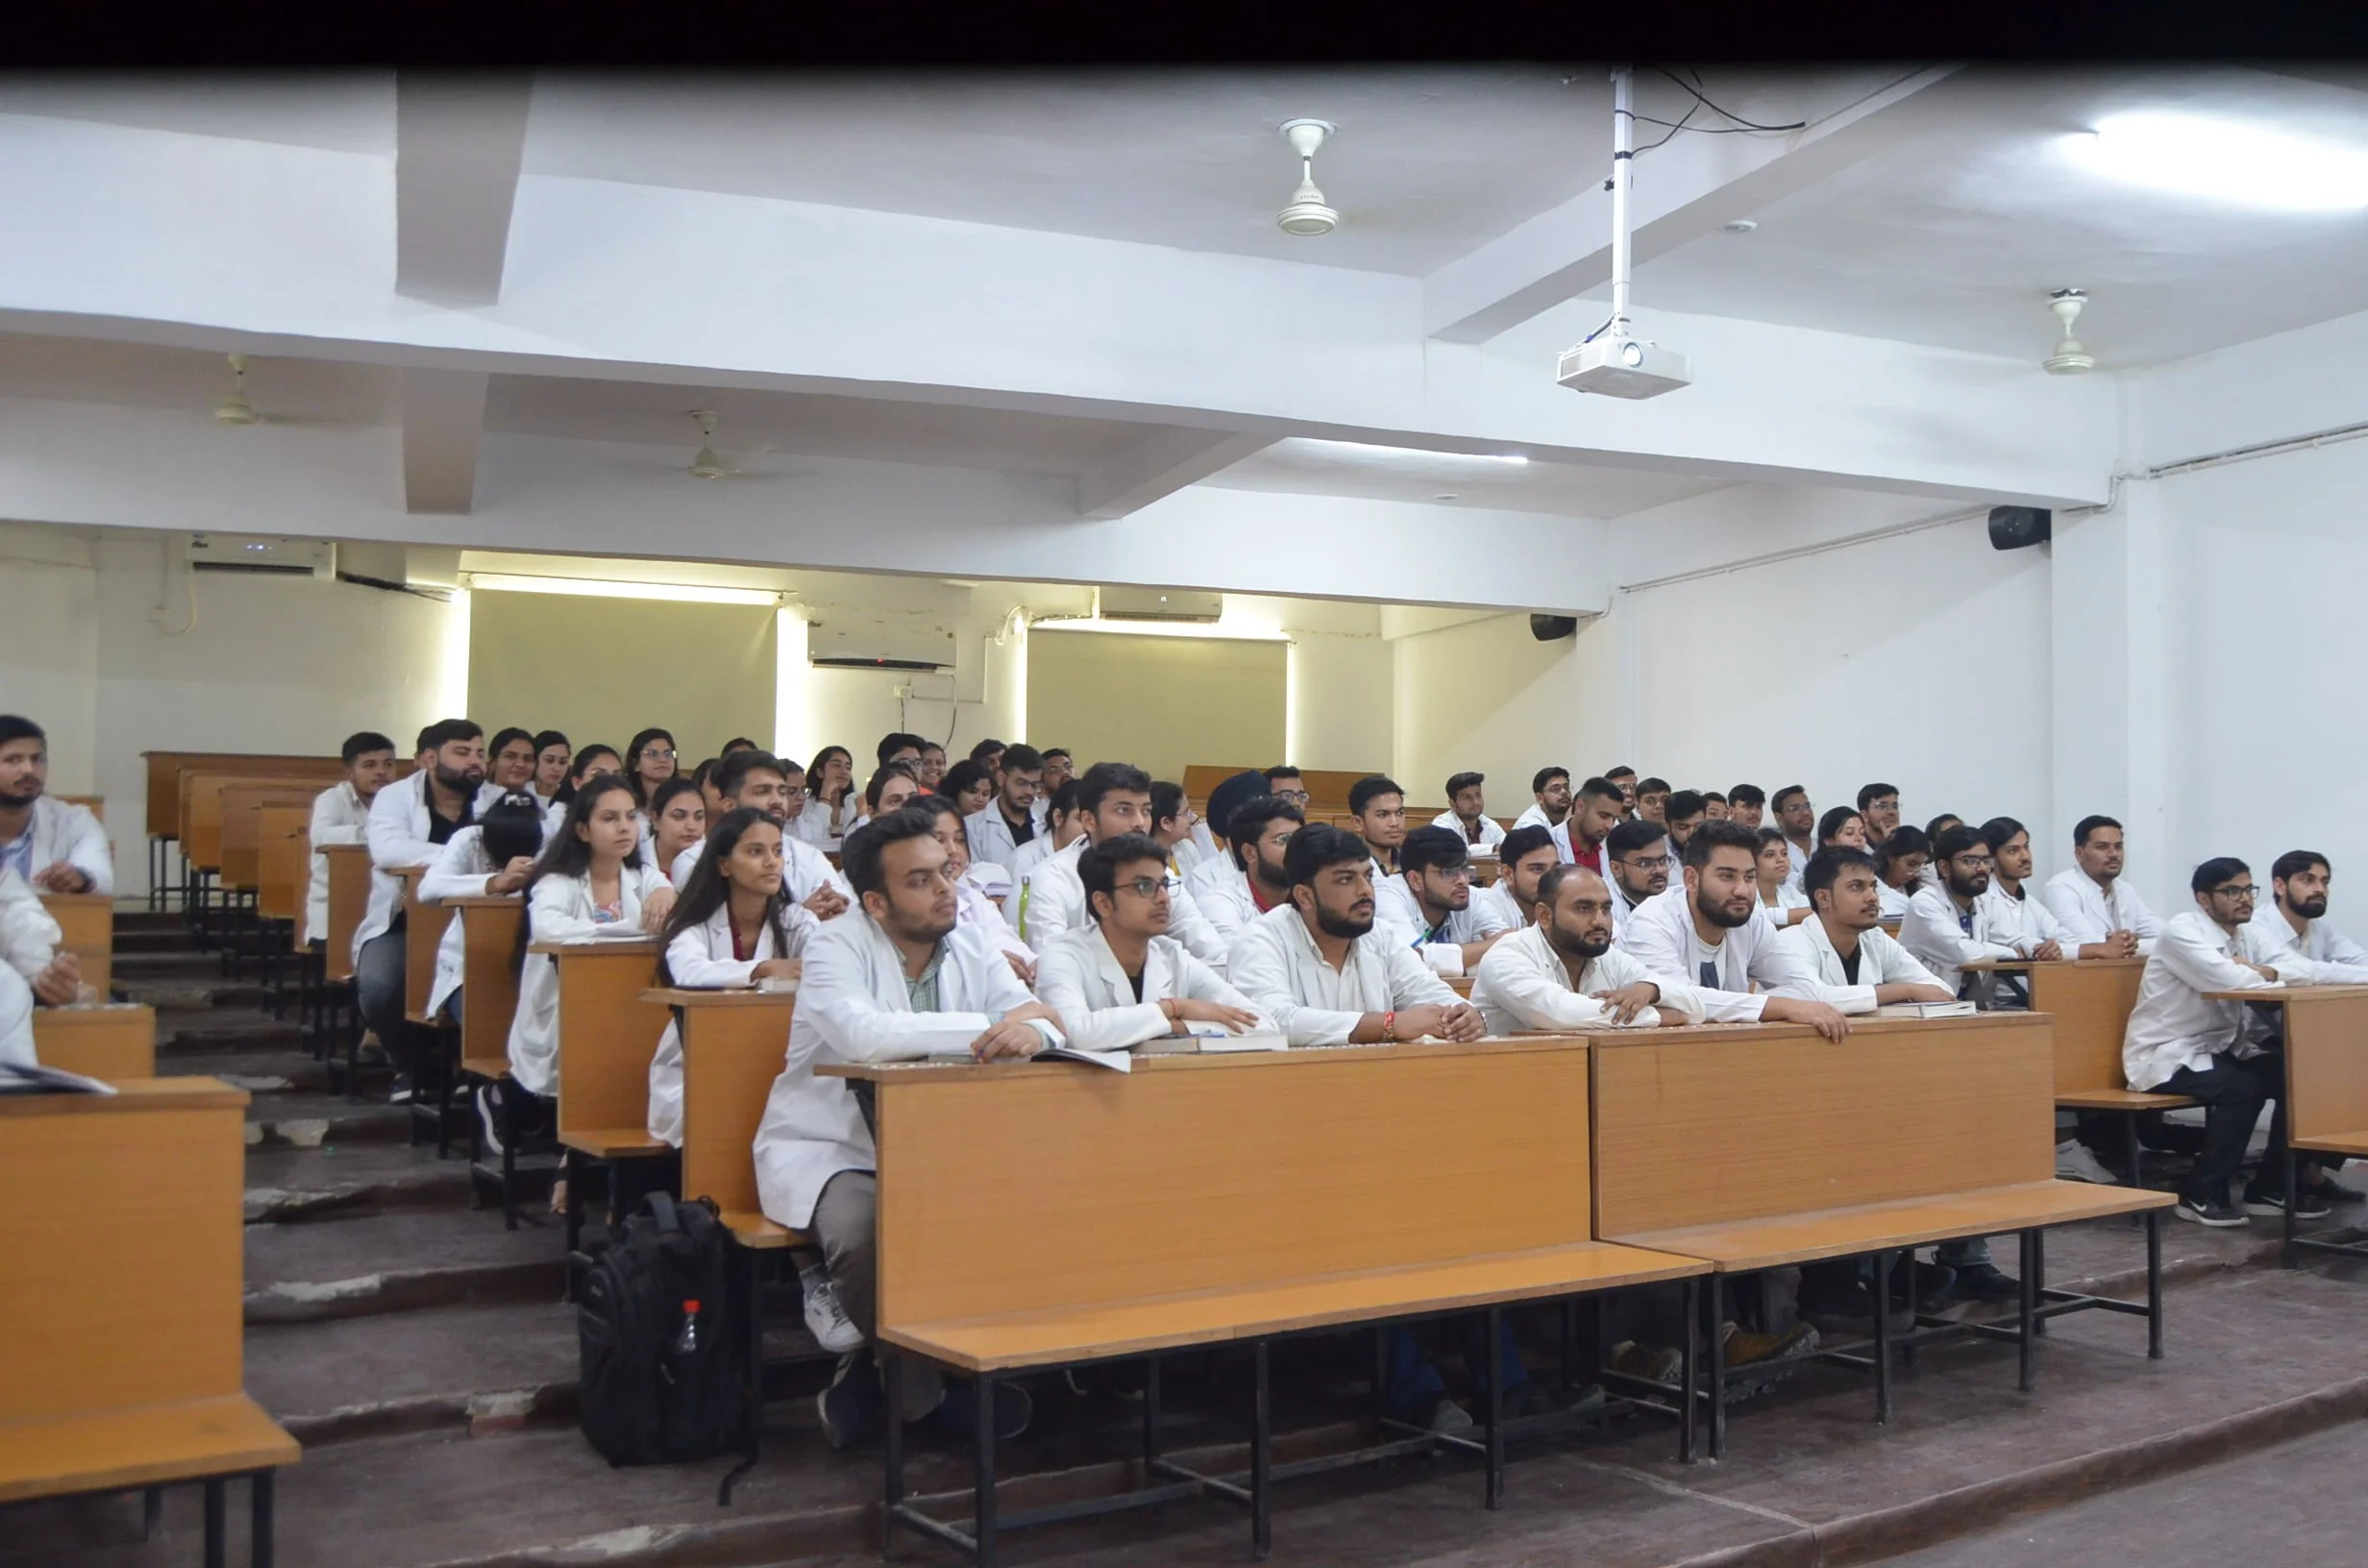 Medical students sitting in Auditorium